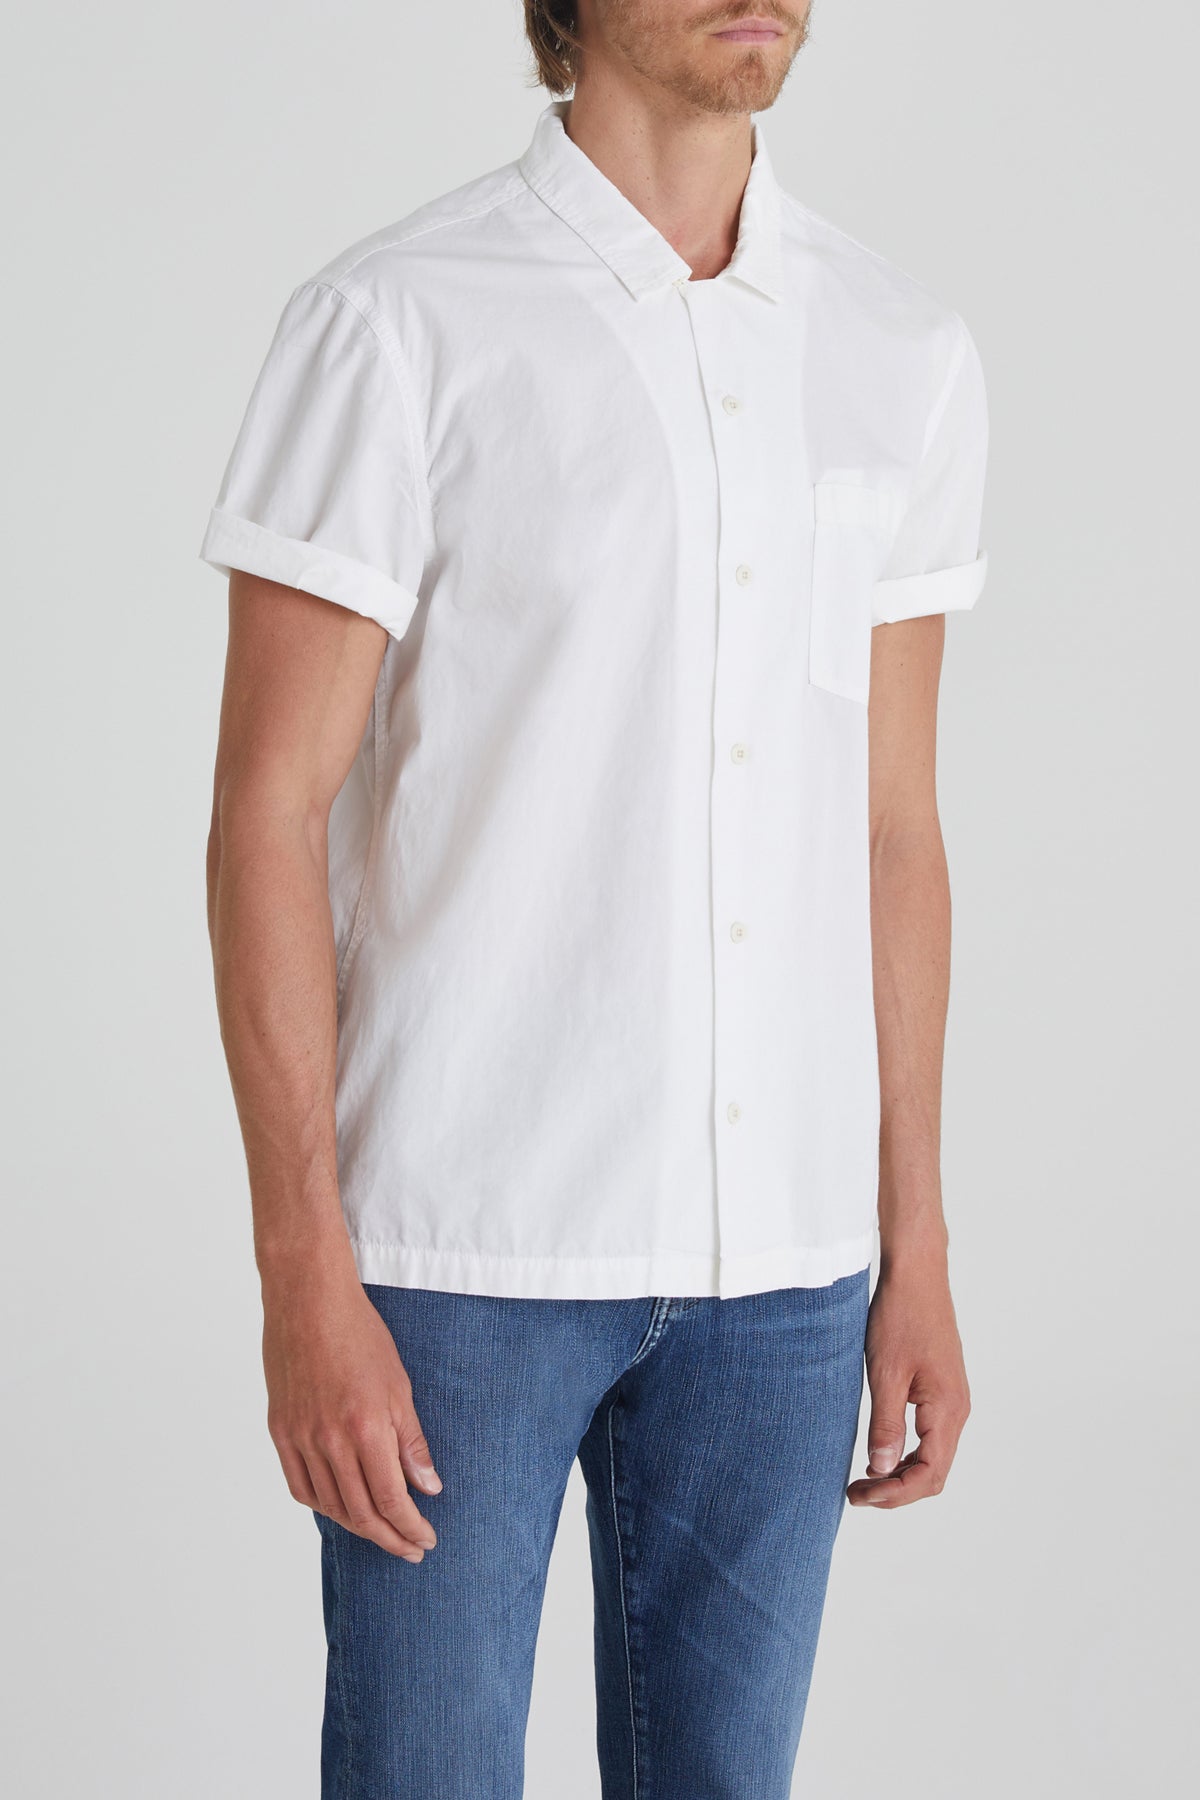 Foster S/S Button Up Shirt